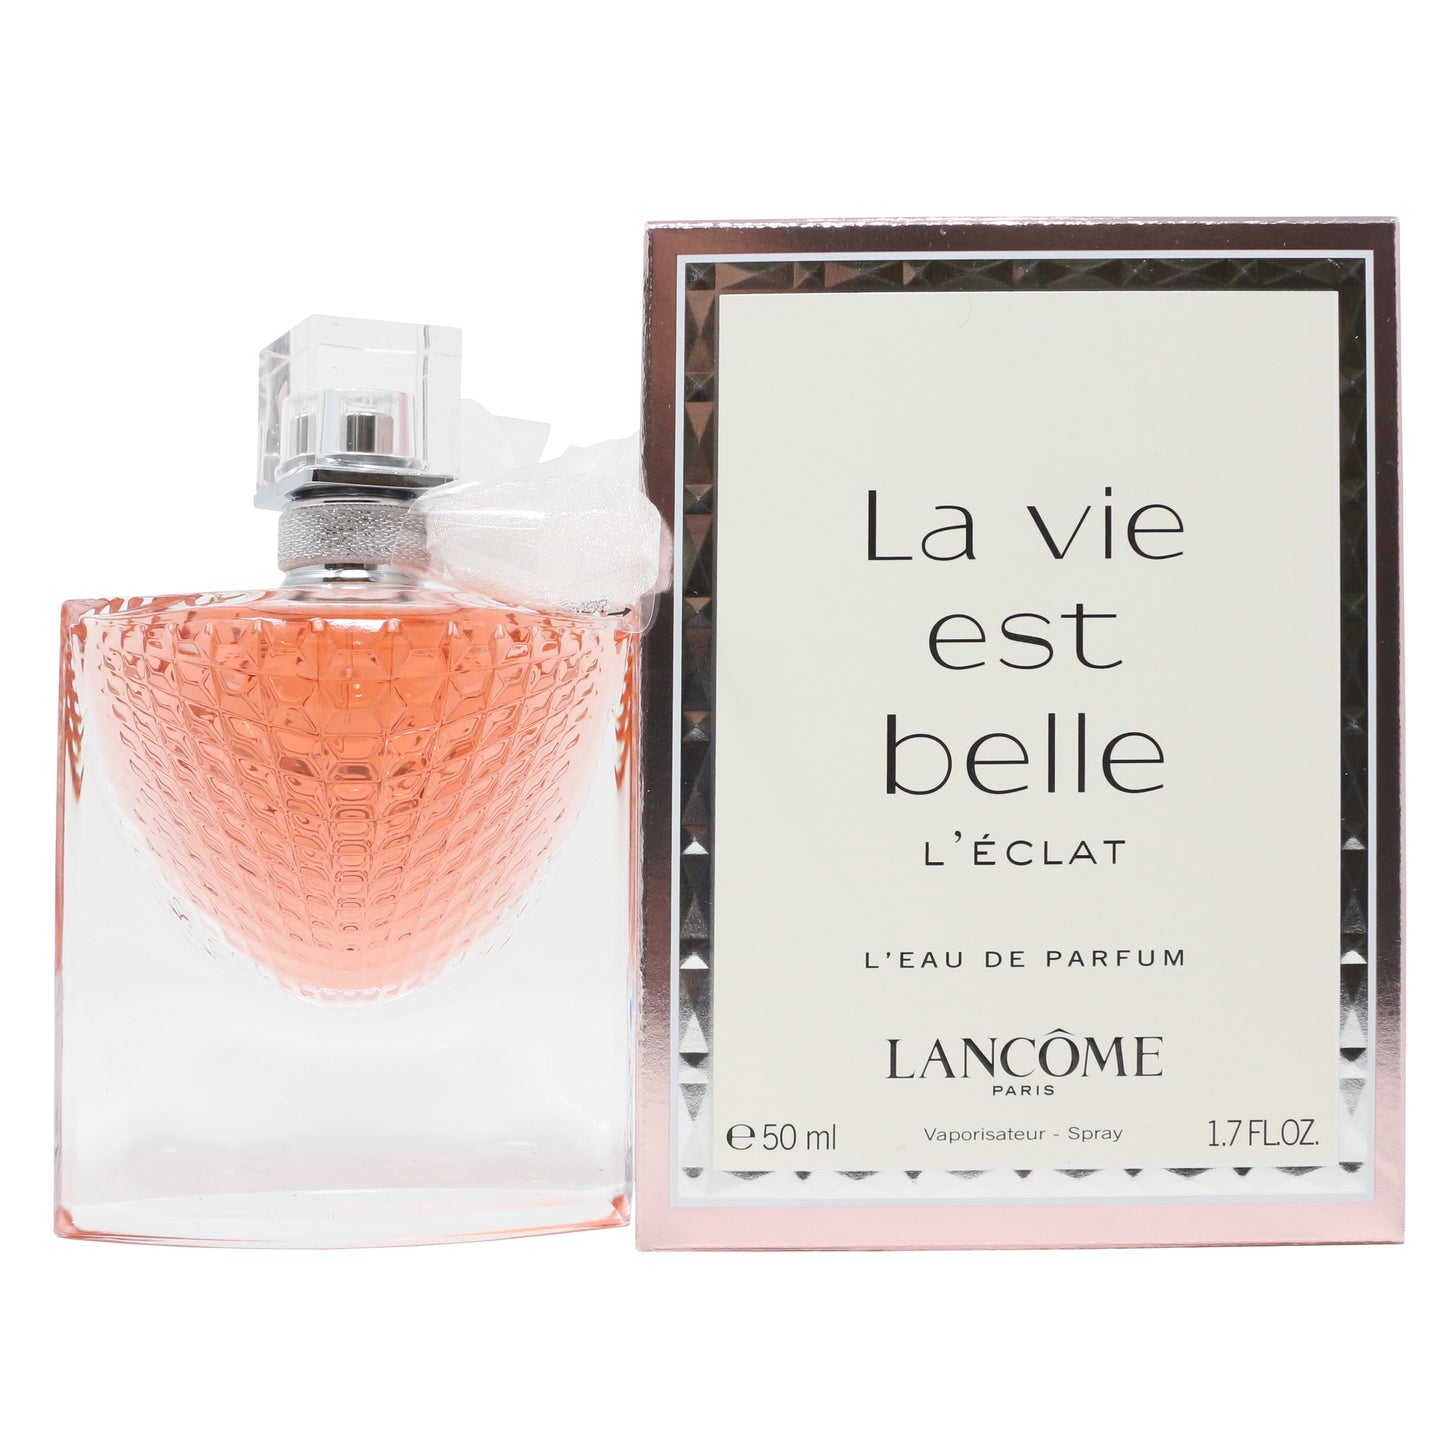 La Vie Est Belle L'eclat by Lancome L'eau De Parfum 1.7oz/50ml Spray New In Box